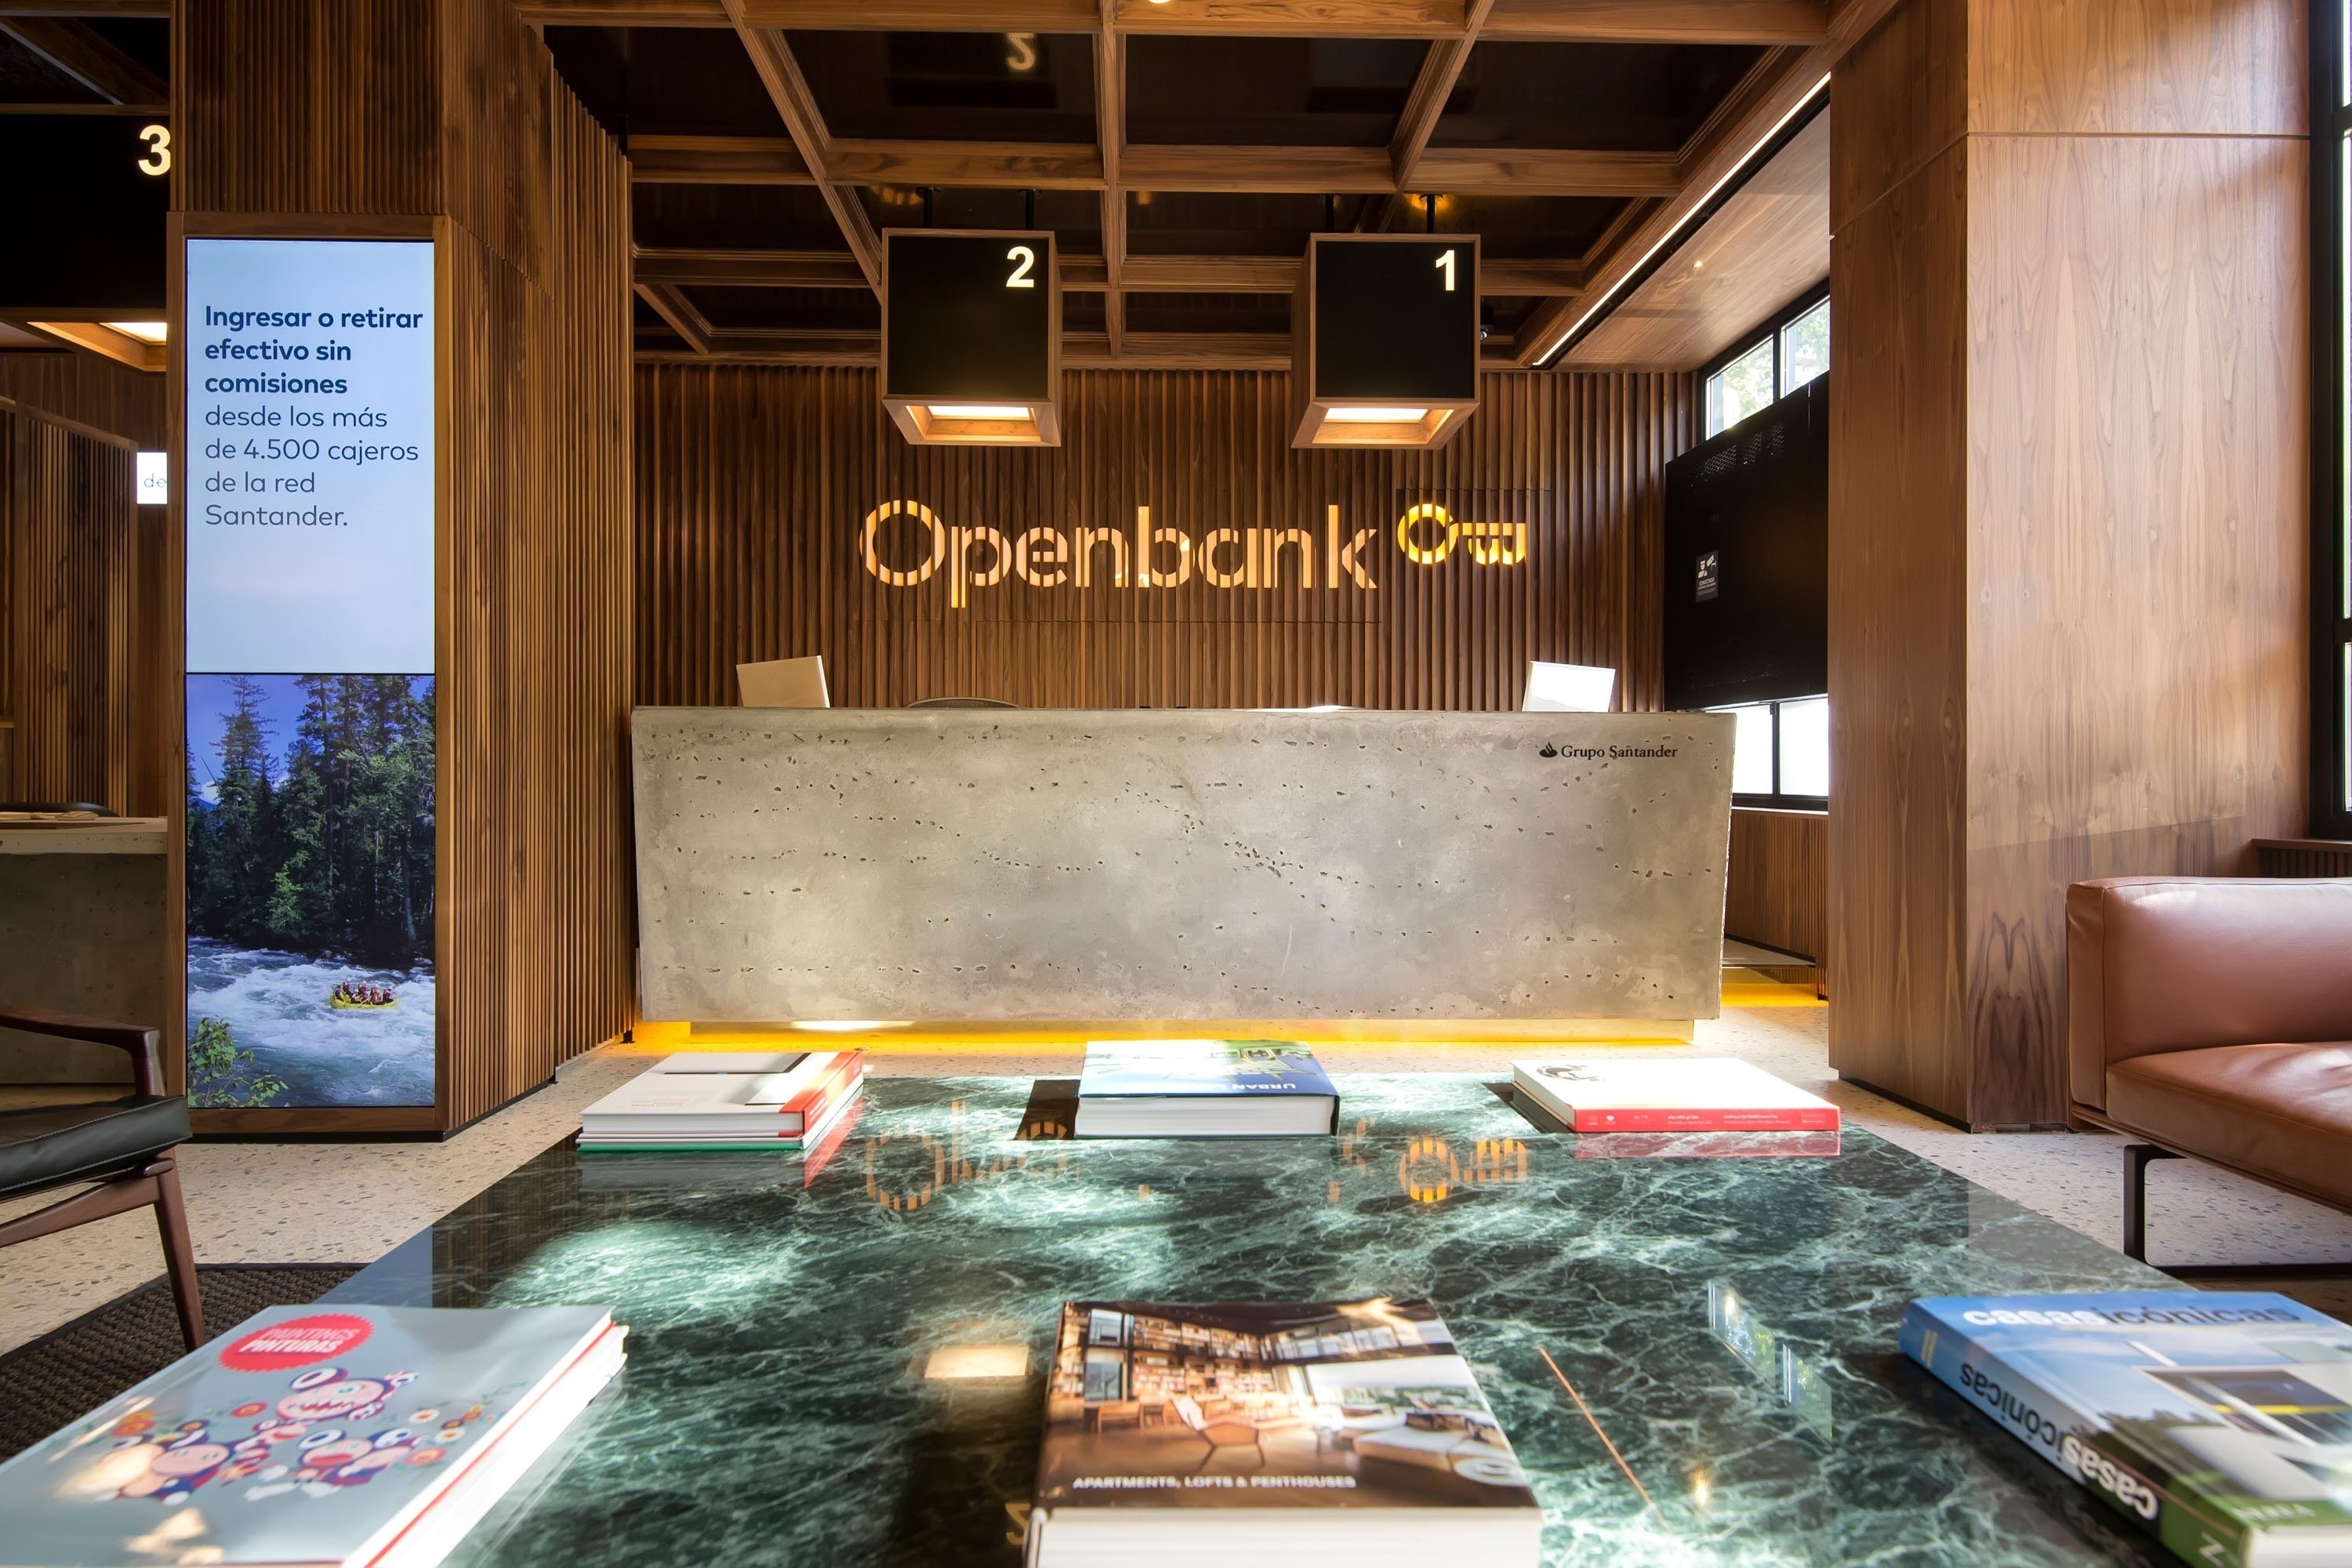 Santander pone fecha al lanzamiento de Openbank en México